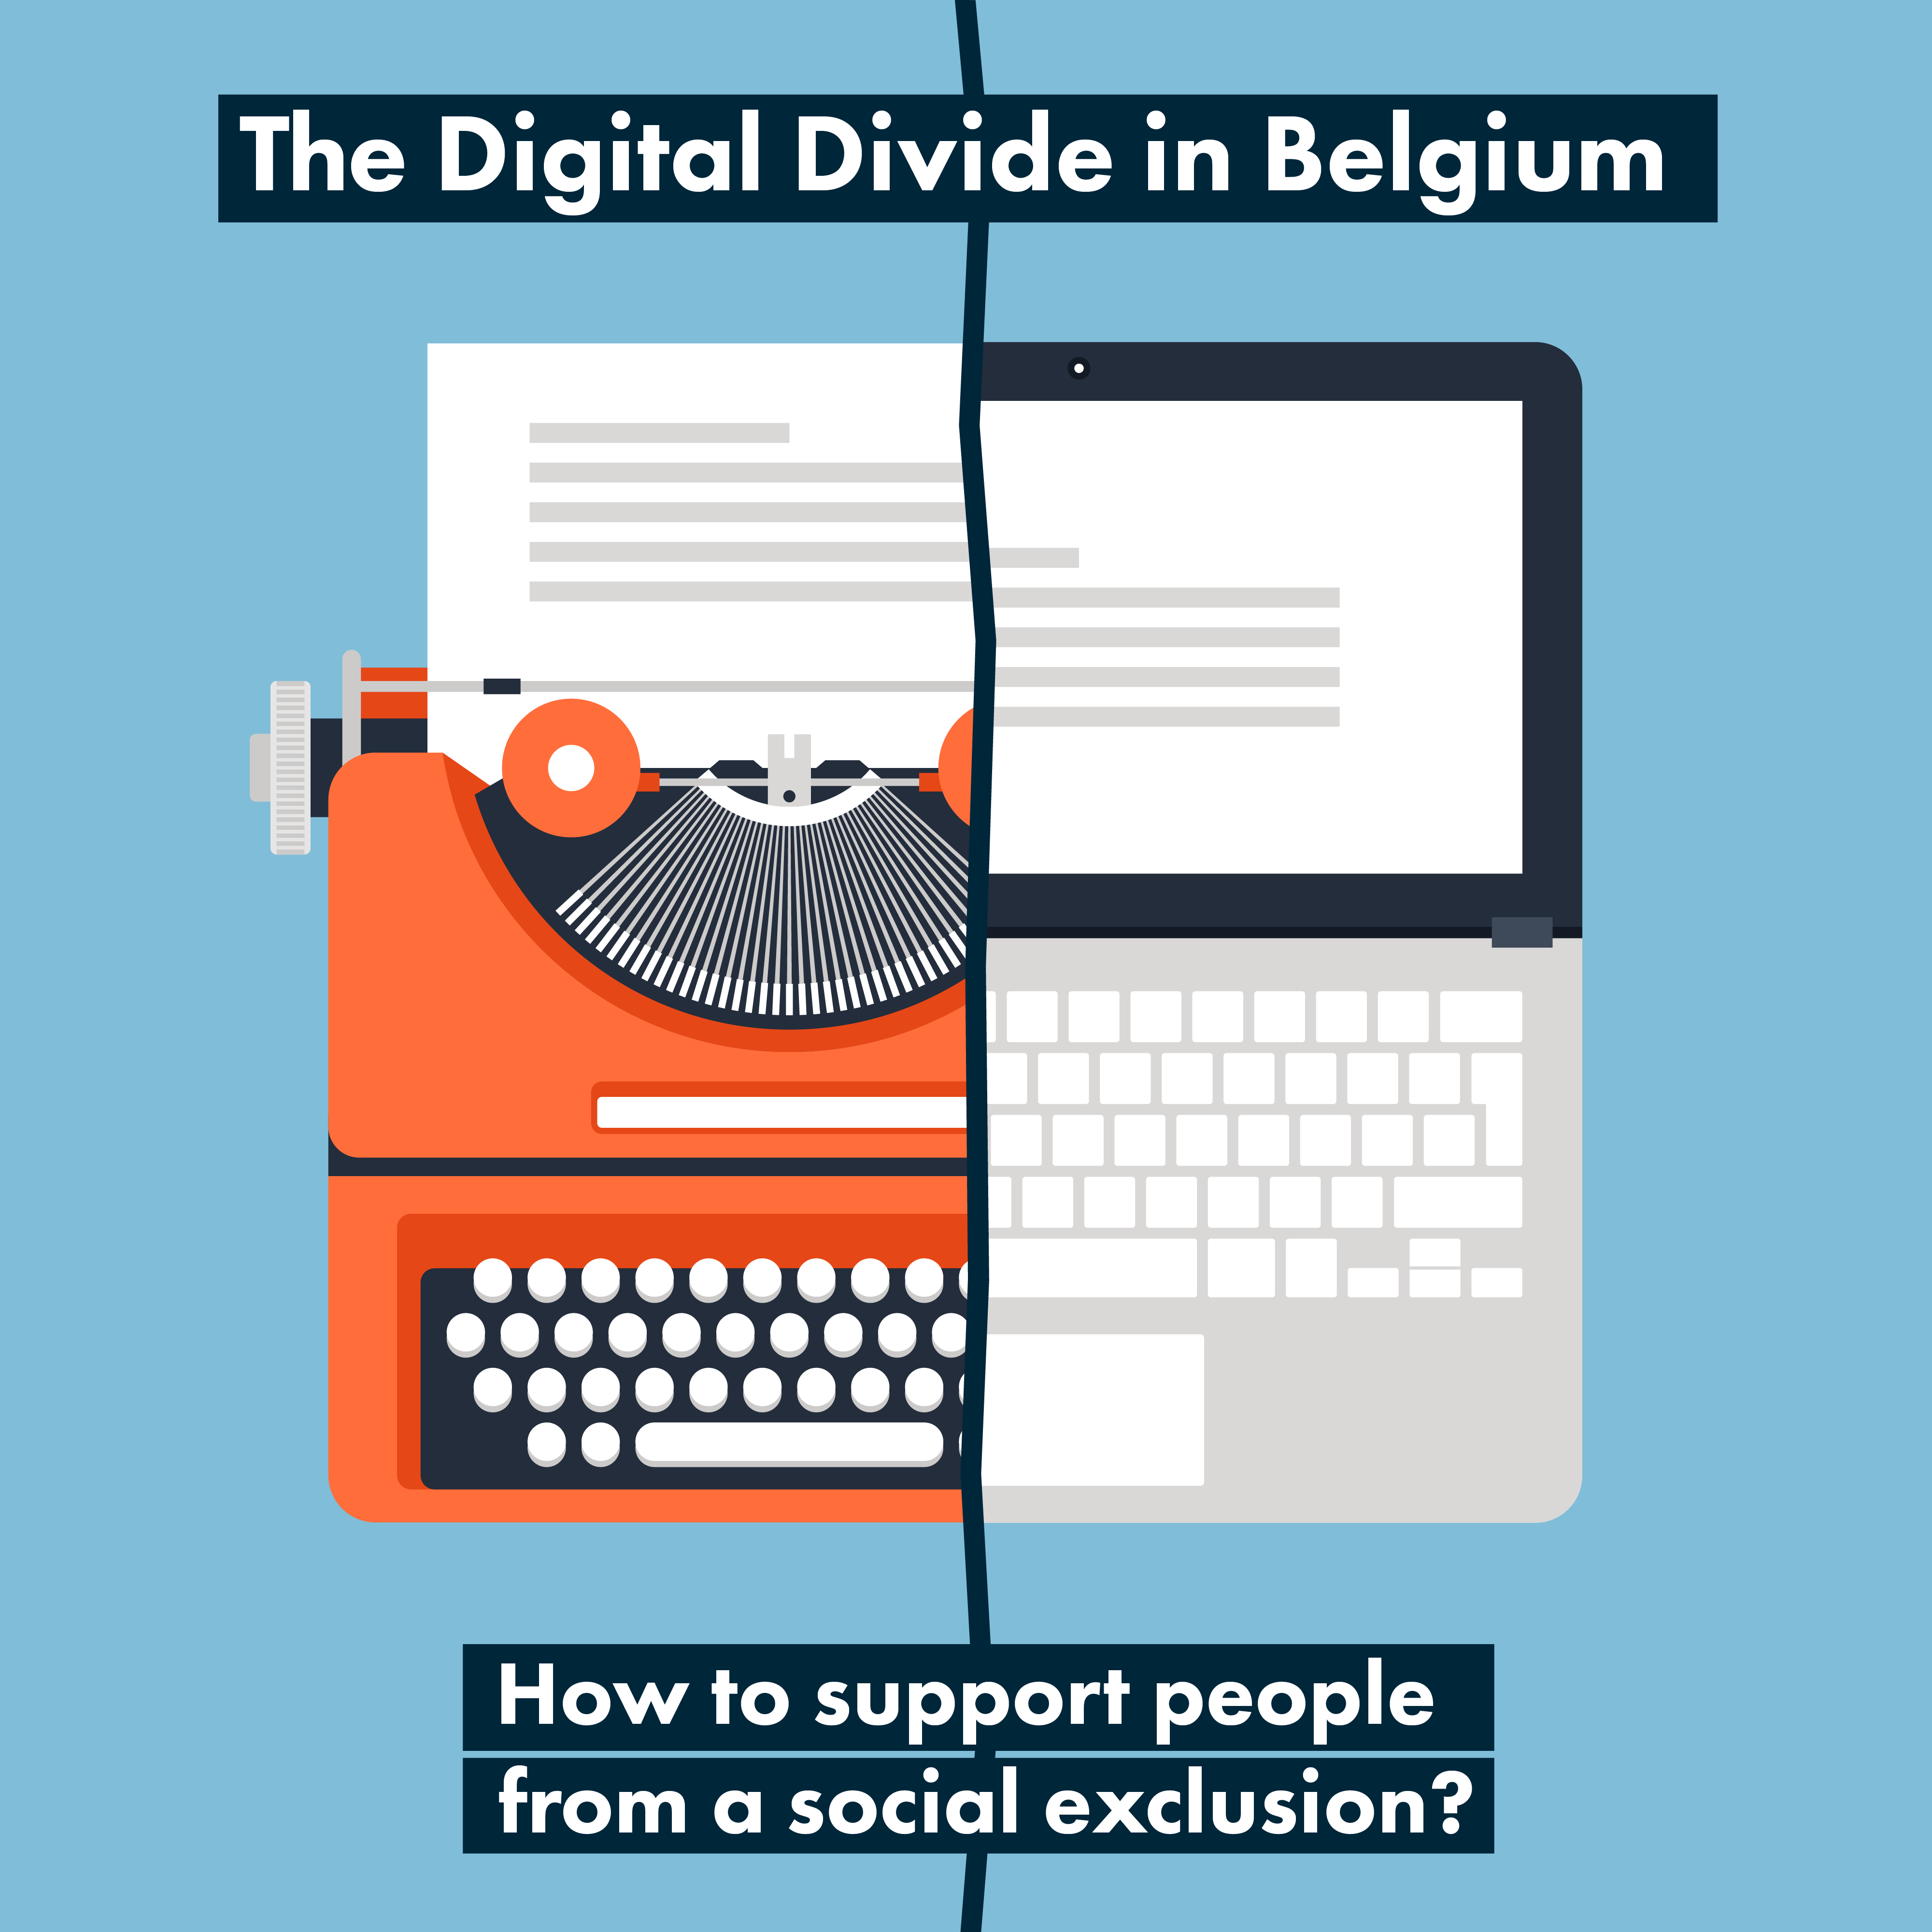 The digital divide in Belgium